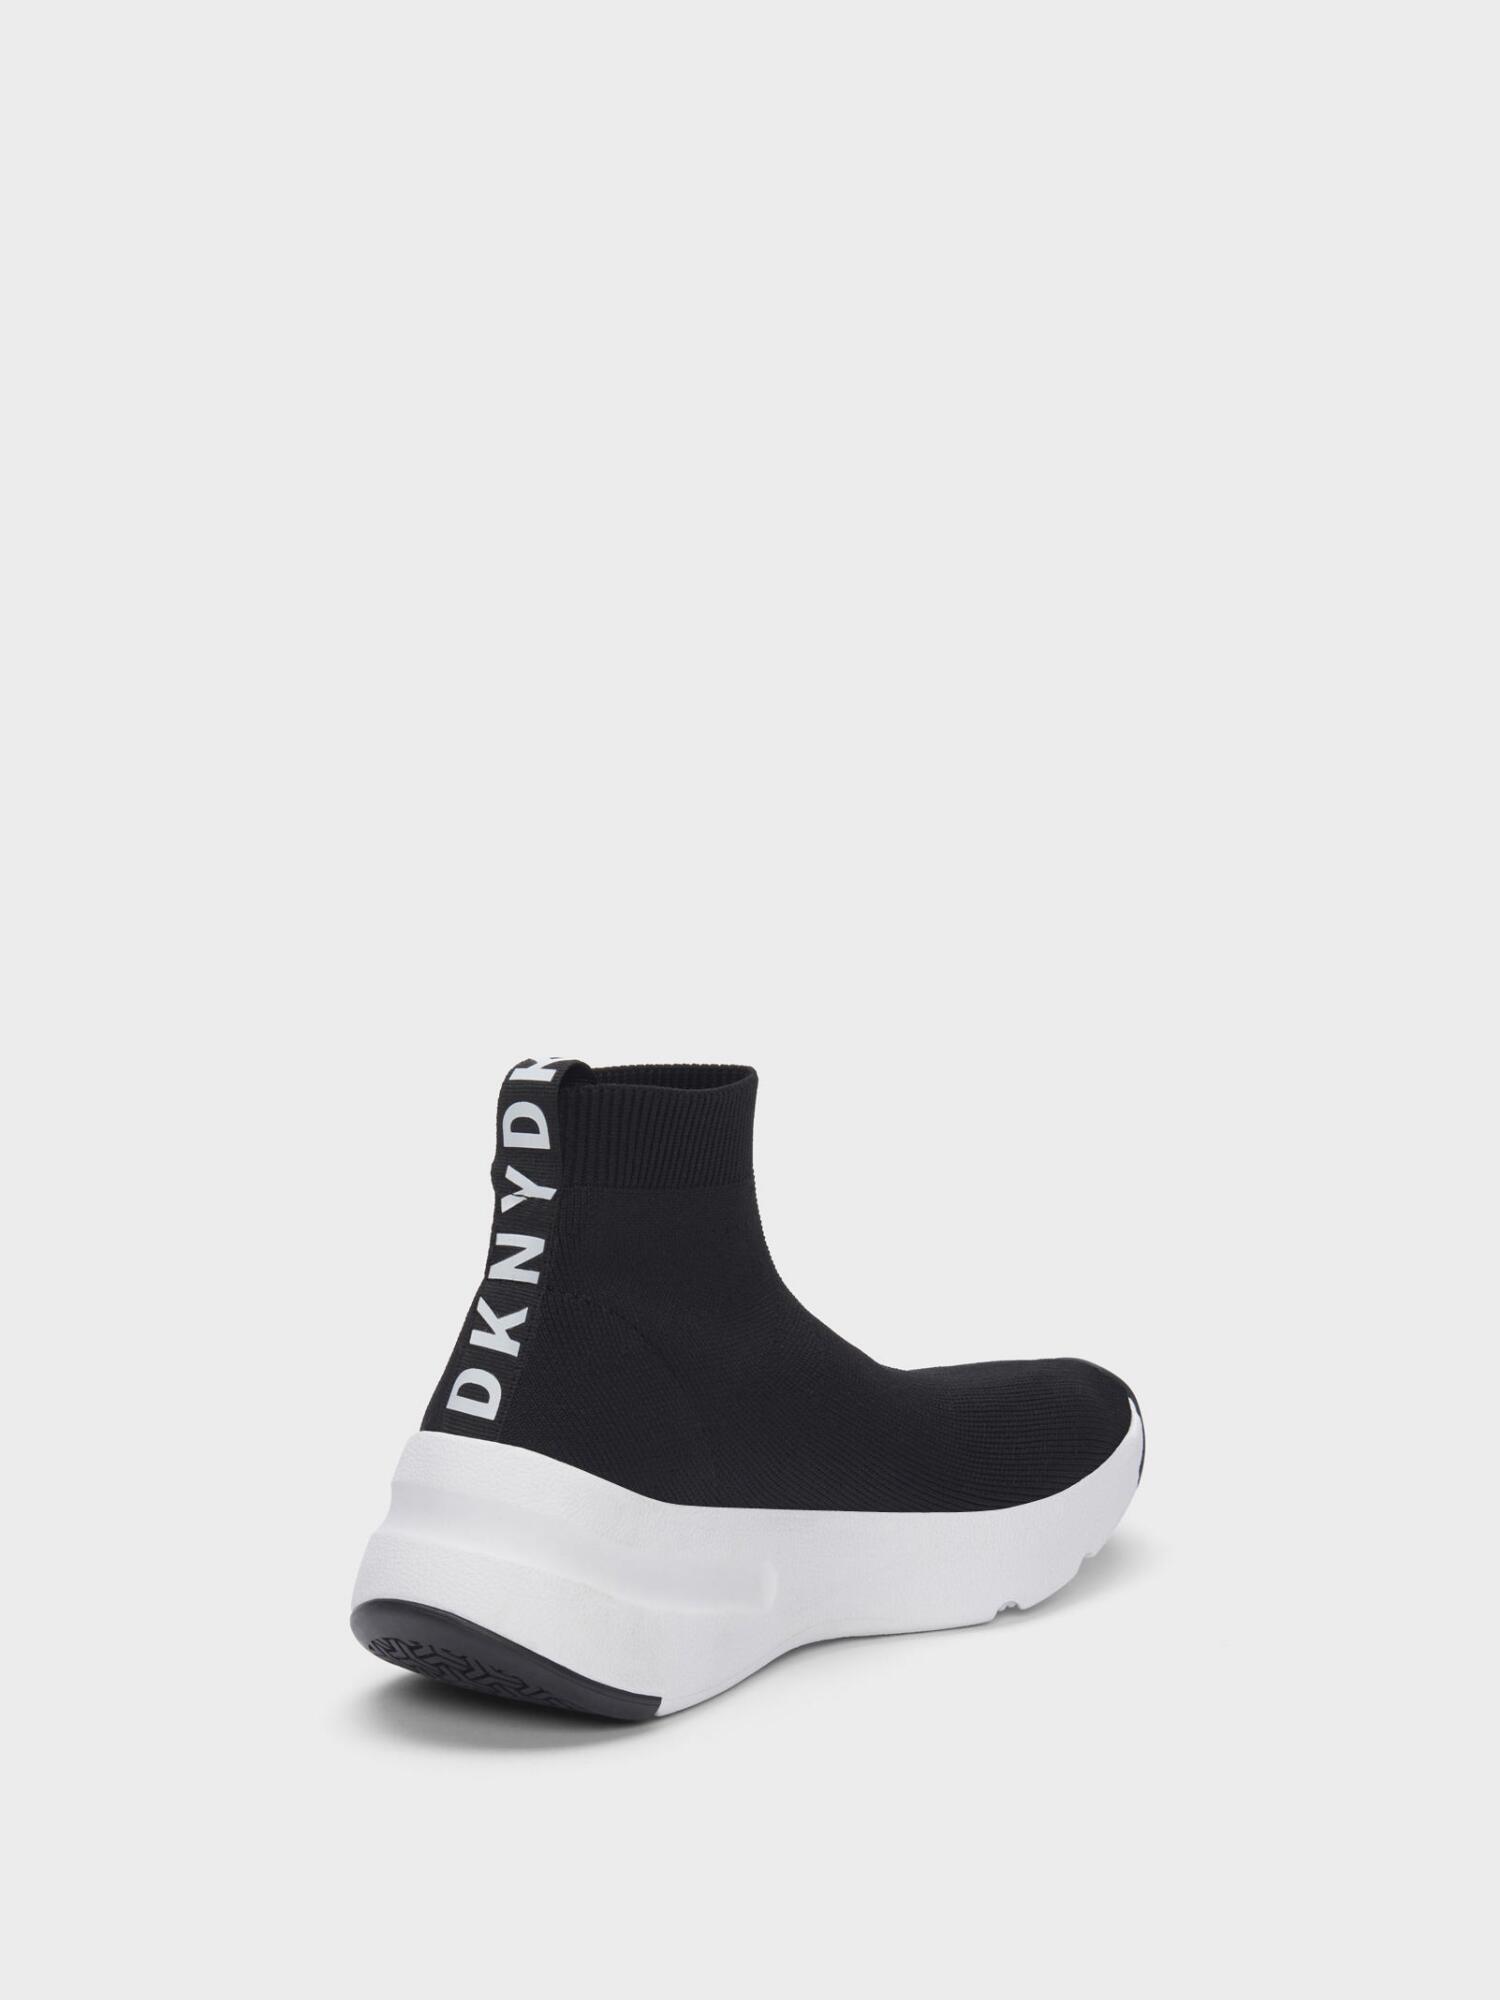 DKNY Parin Sock Sneaker in Black - Lyst